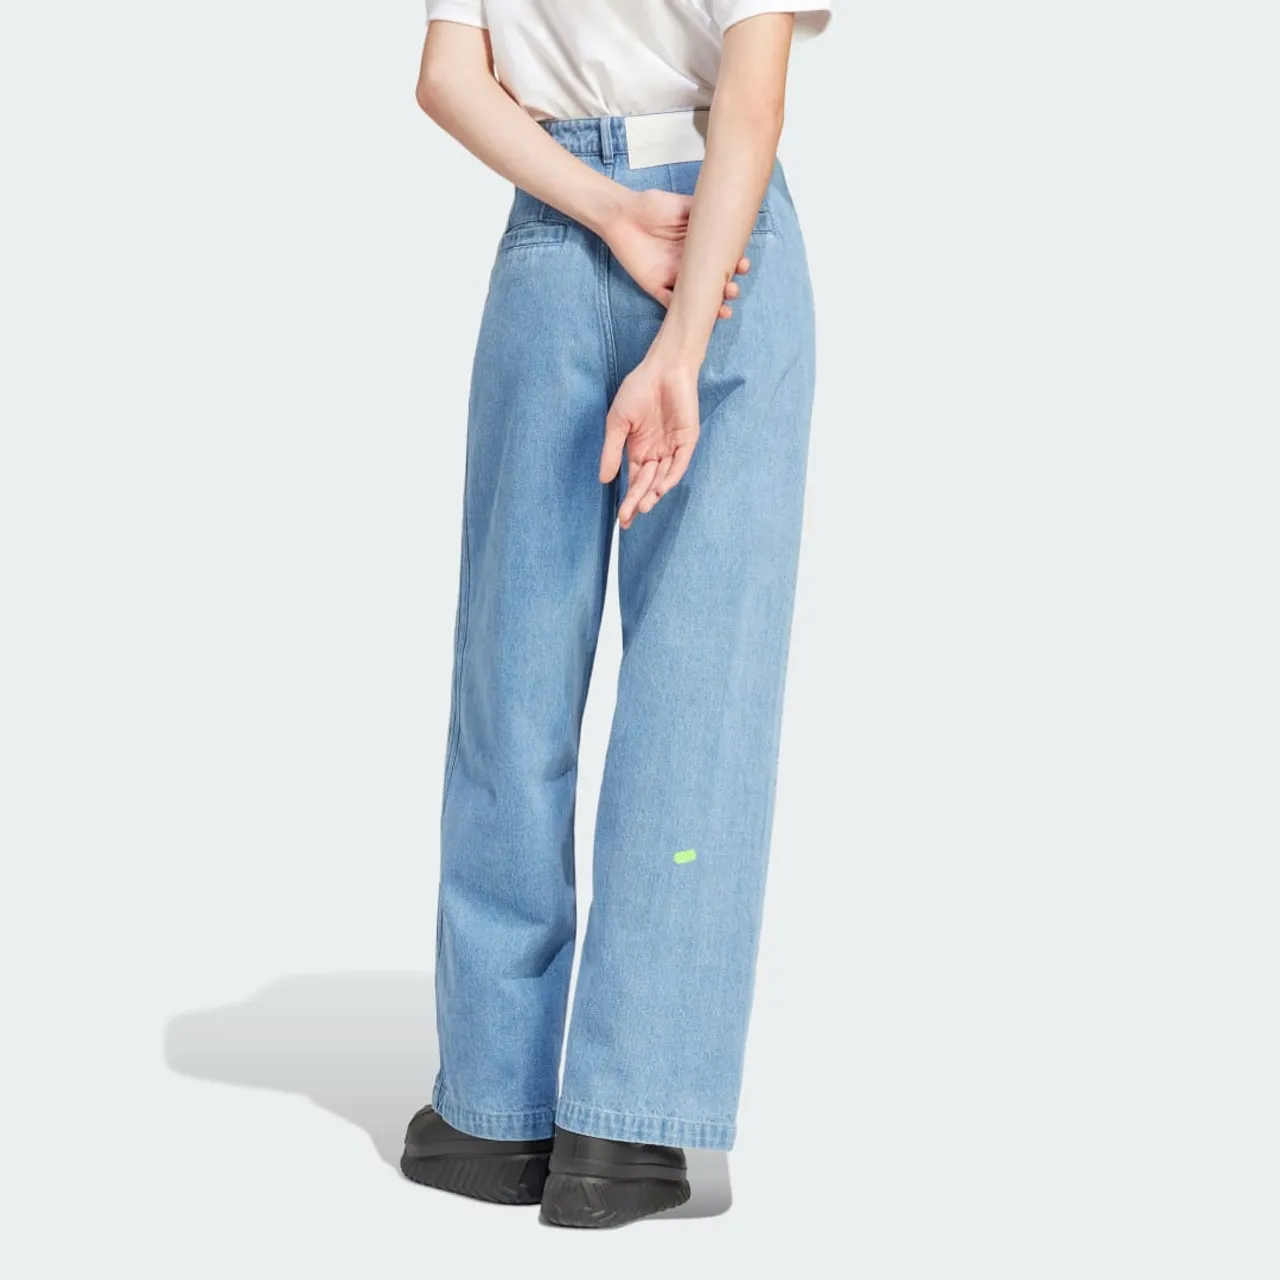 KSENIASCHNAIDER 3-Stripes Jeans